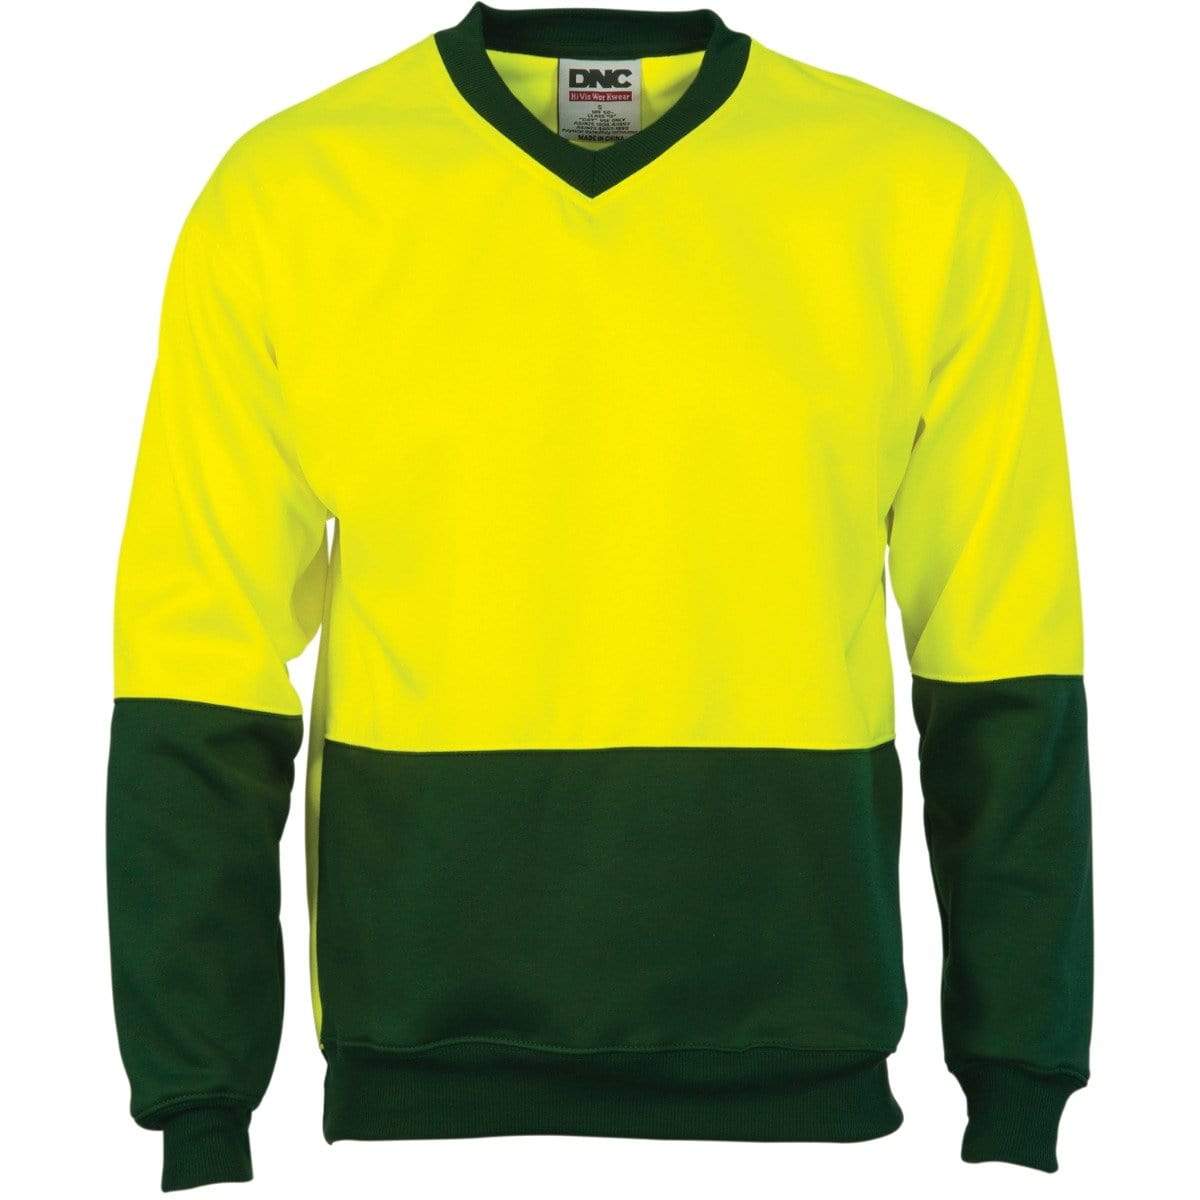 Dnc Workwear Hi-vis Two-tone Fleecy V-neck Sweatshirt (Sloppy Joe) - 3822 Work Wear DNC Workwear Yellow/Bottle Green XS 